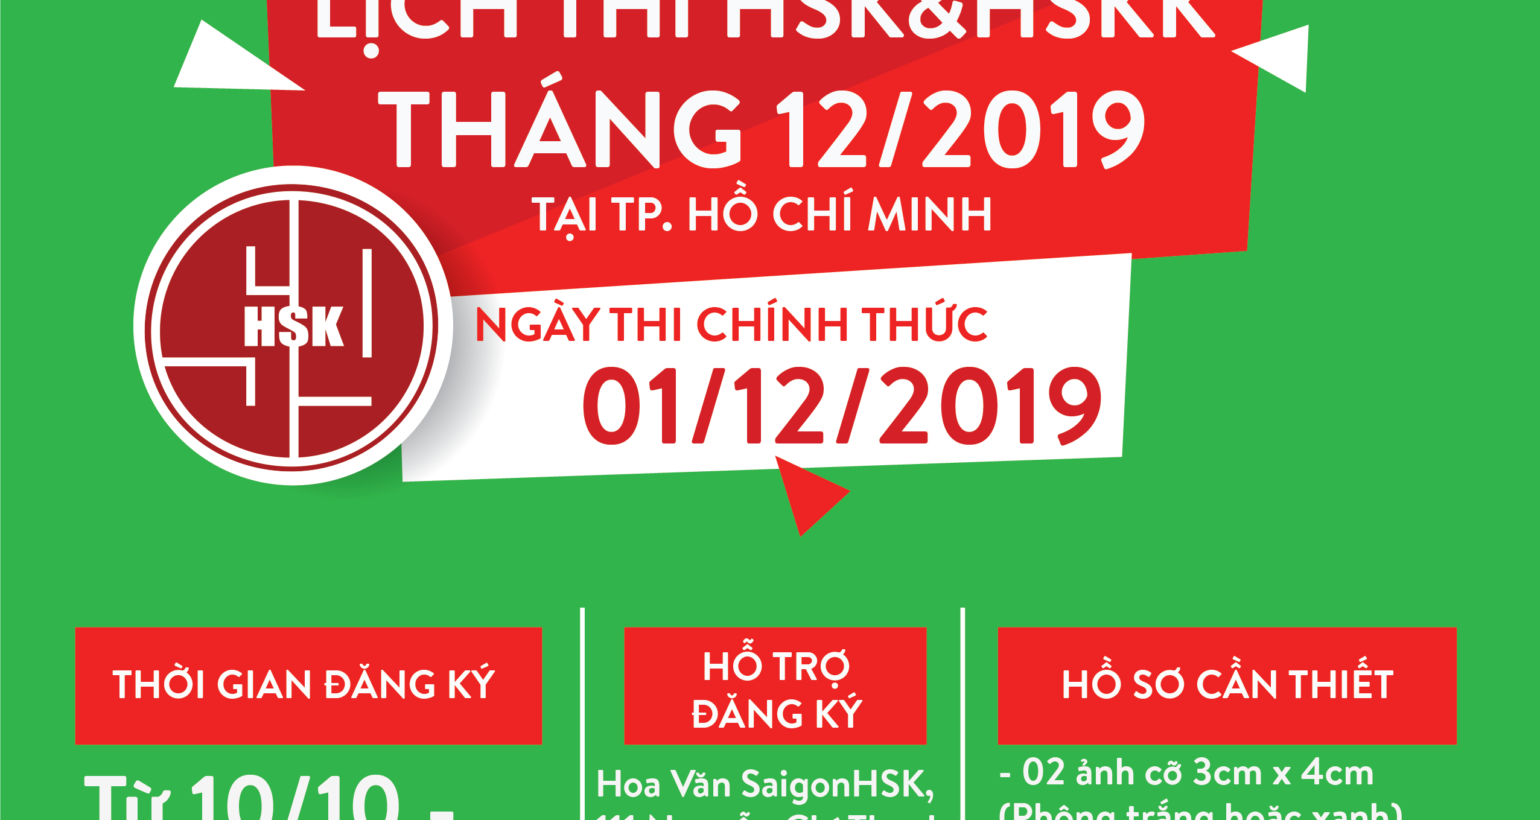 Lịch thi HSK đợt 3 (tháng 12-2019) chính thức tại Tp Hồ Chí Minh